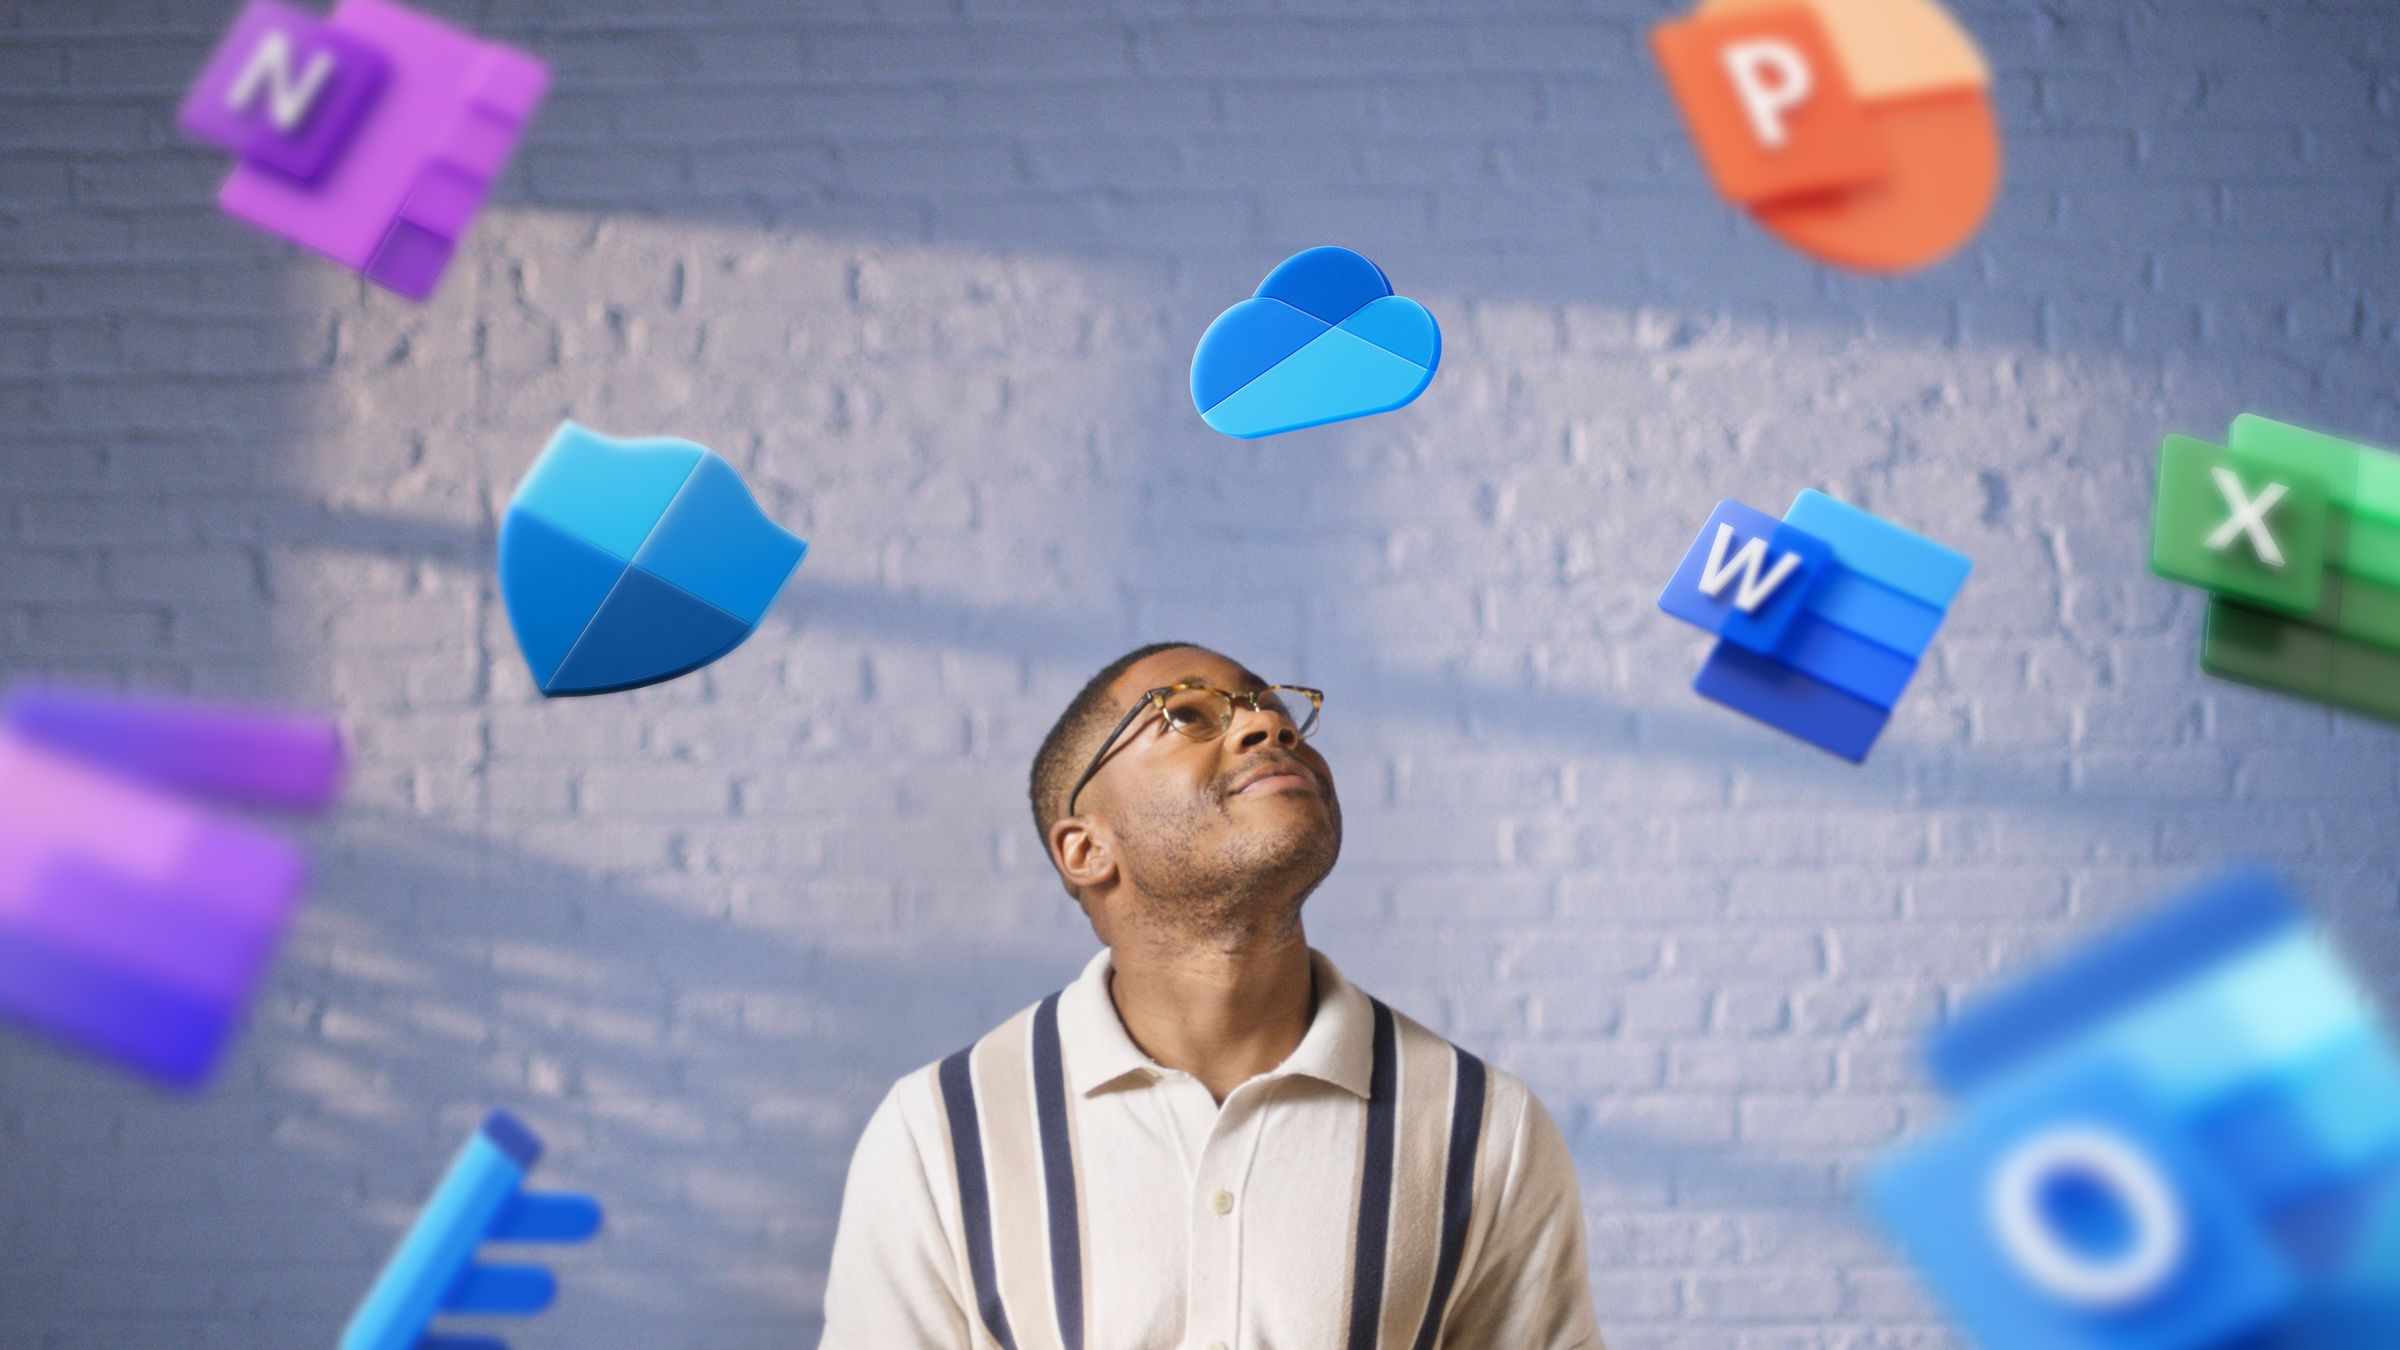 Illustration von Microsoft 365-Logos über einen Mann